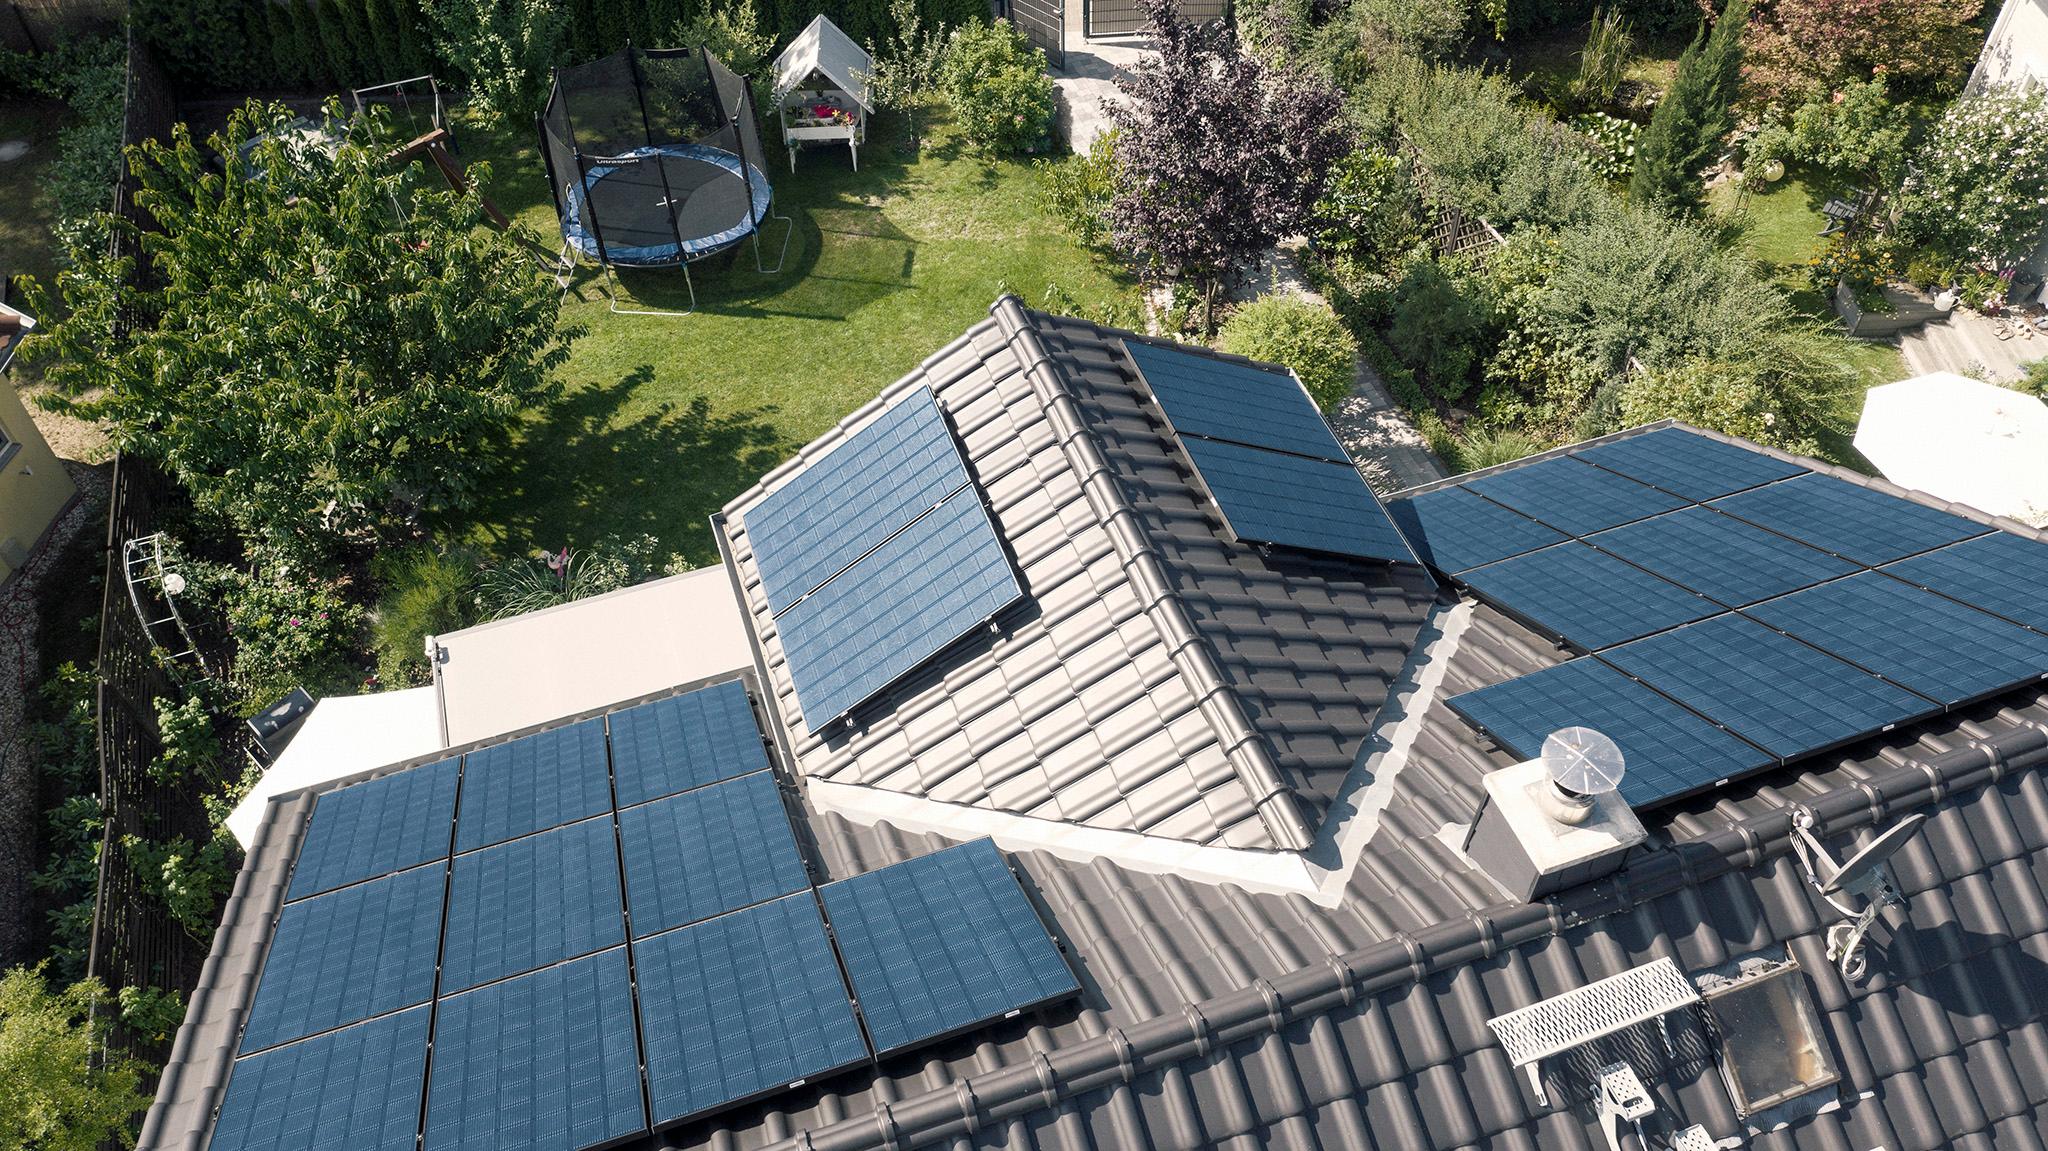 Solaranlage auf dem Dach mit zolar - PV-Anlage ohne Anmeldung betreiben 2022